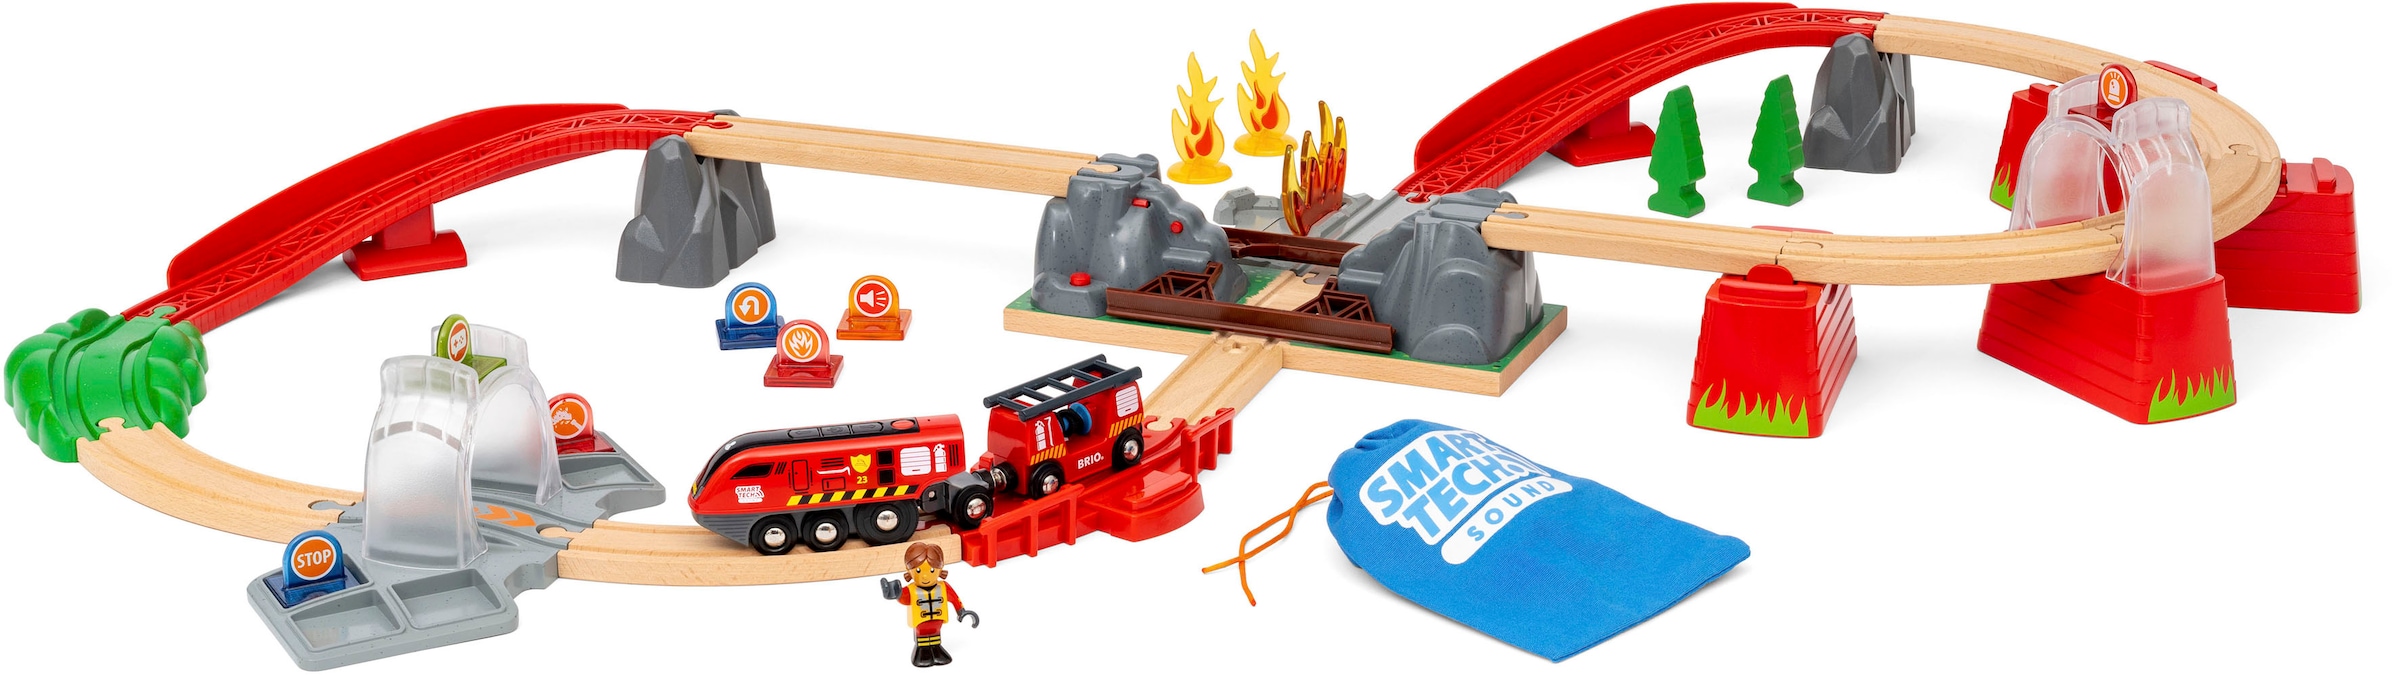 BRIO® Spielzeug-Feuerwehr »BRIO® WORLD, Feuerwehreinsatz-Rettungs-Set«, (Set), FSC®- schützt Wald - weltweit